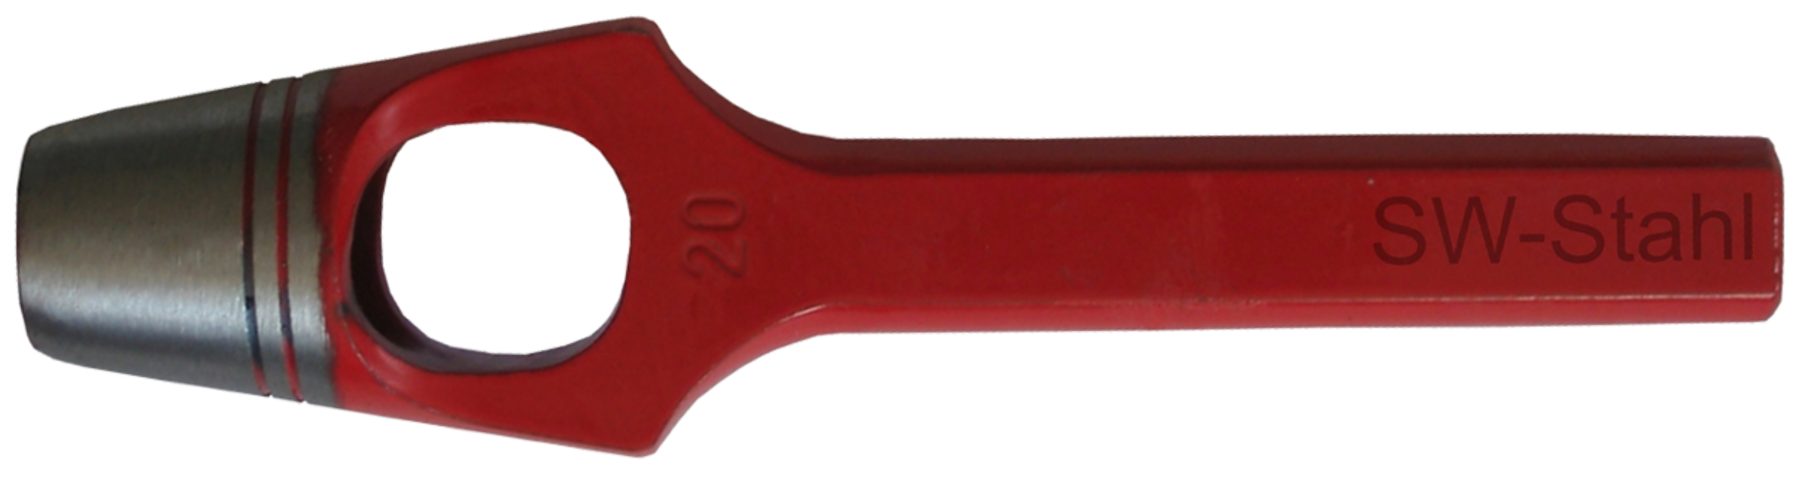 SW-STAHL Multitool 95012L Henkellocheisen ø 12 mm, rot lackiert, geschliffen